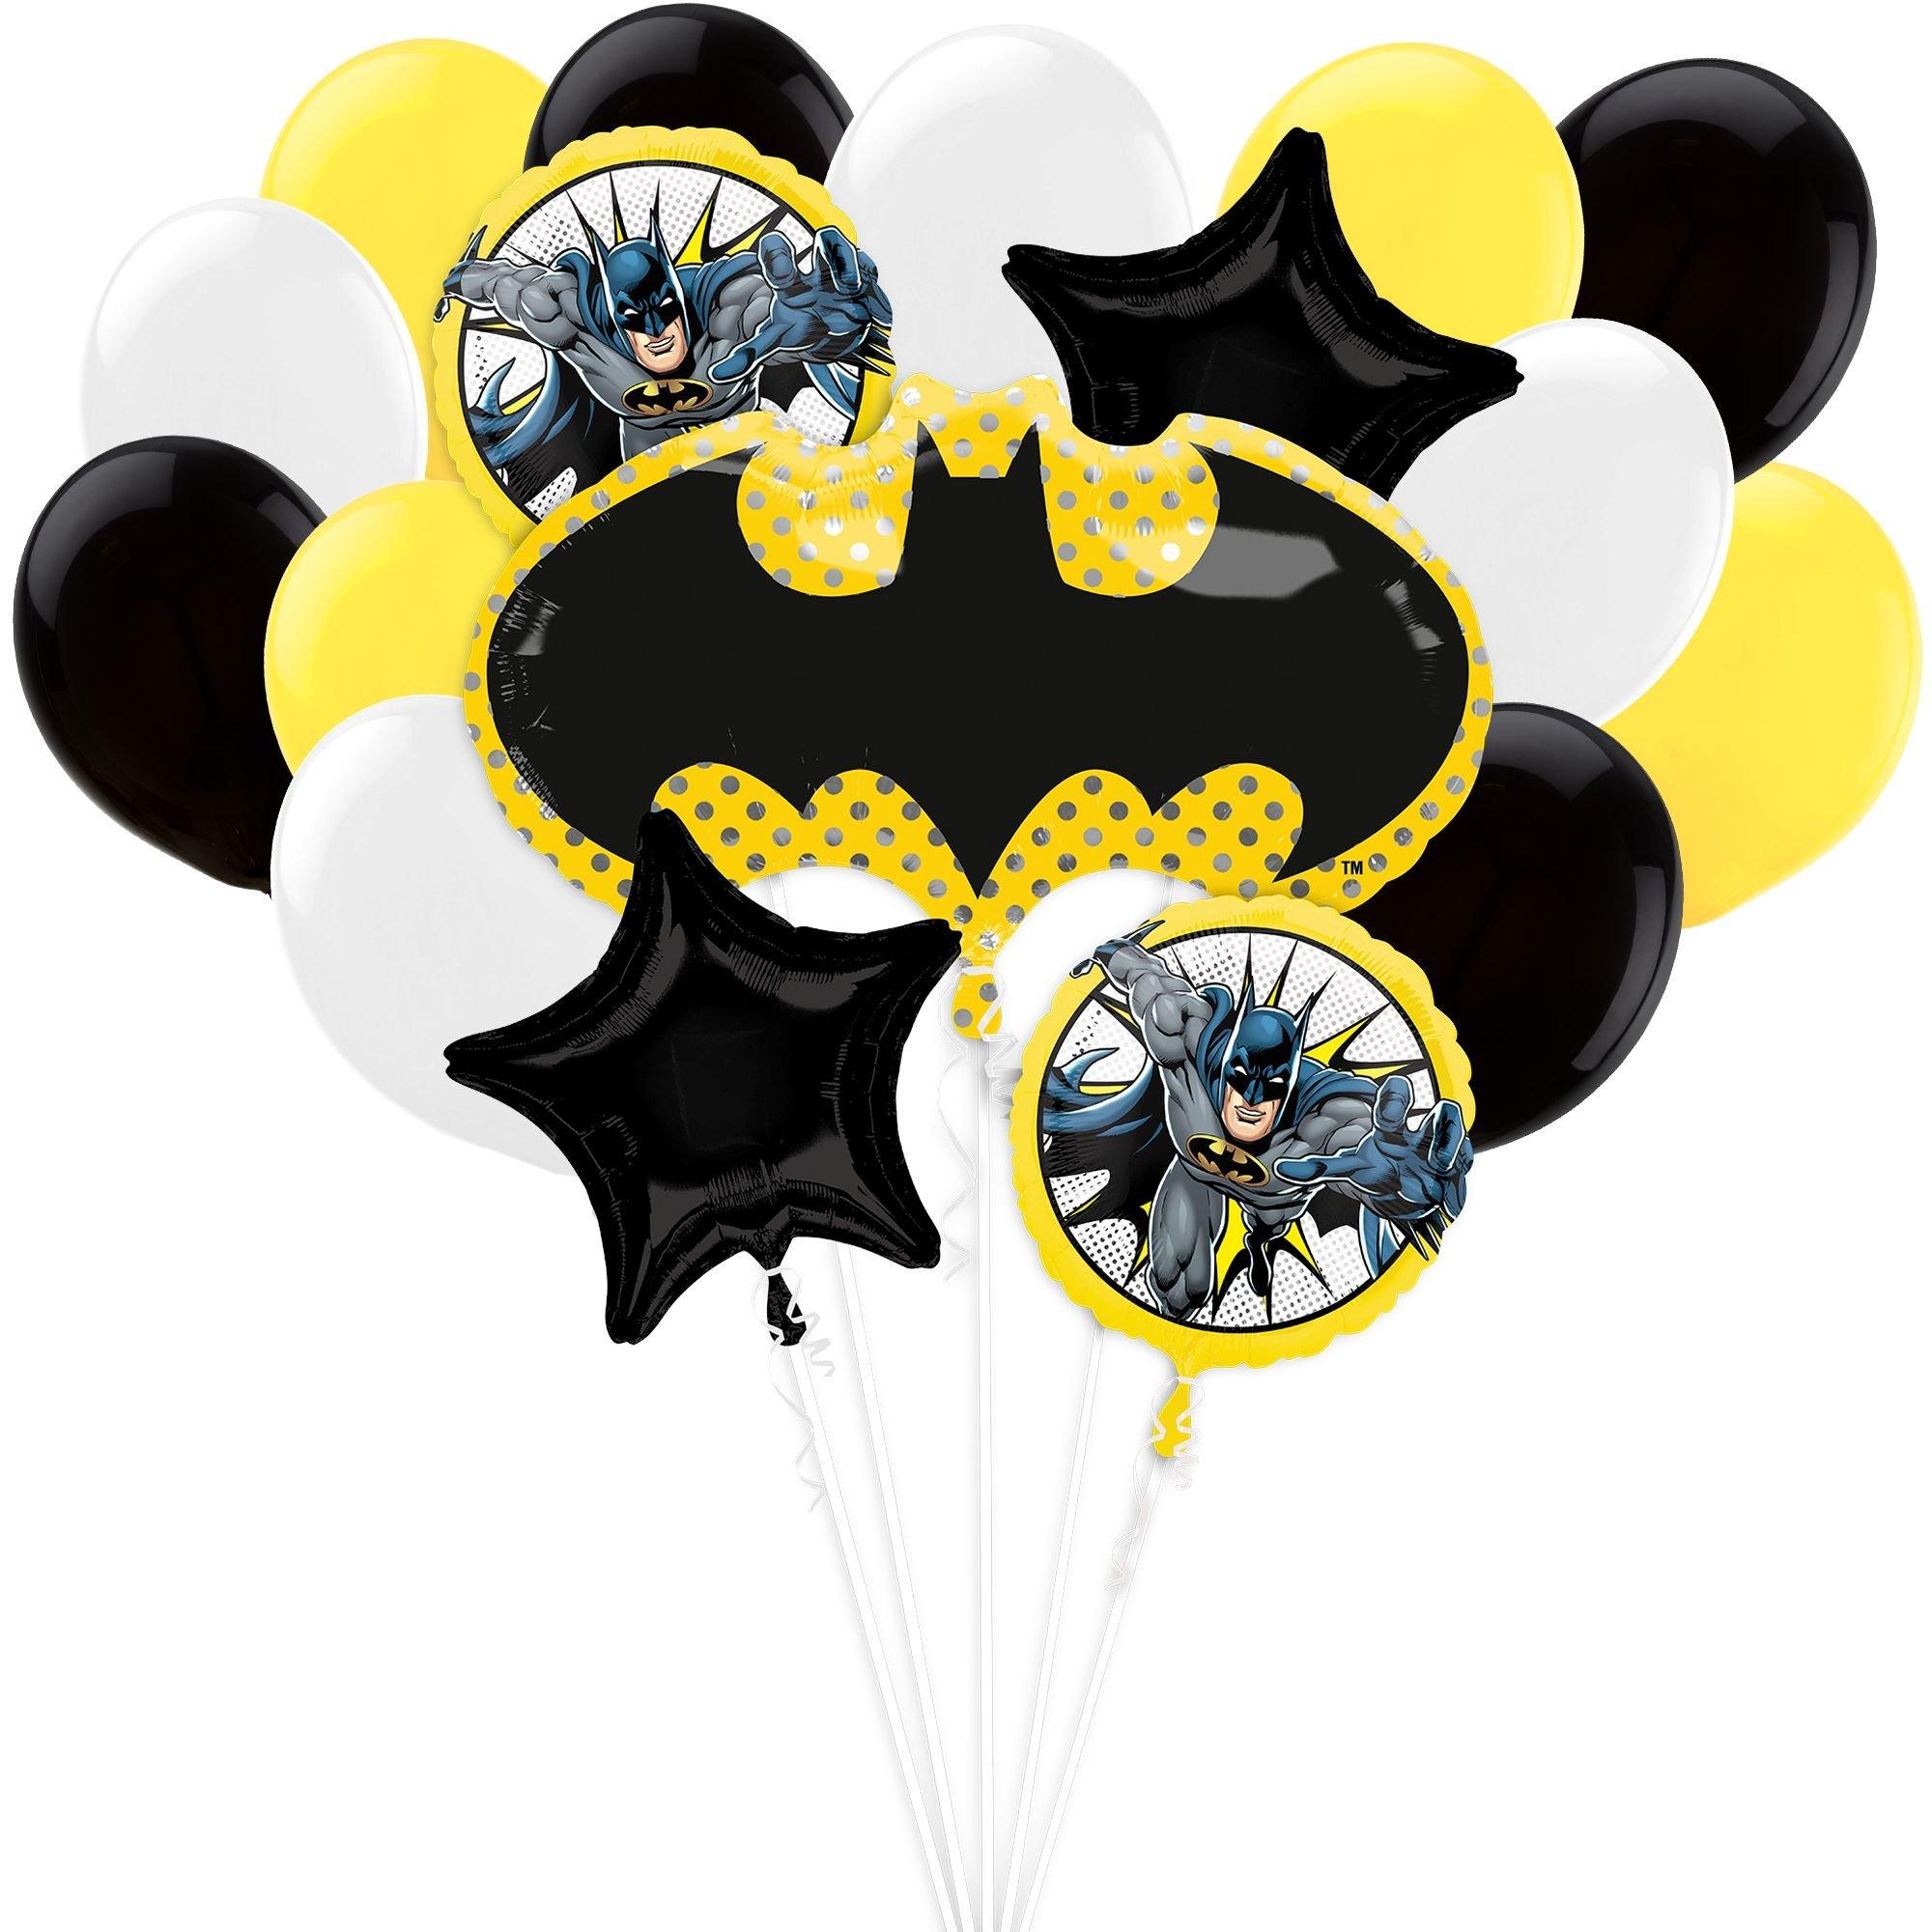 Batman Party Supplies - Batman Birthday Ideas | Party City